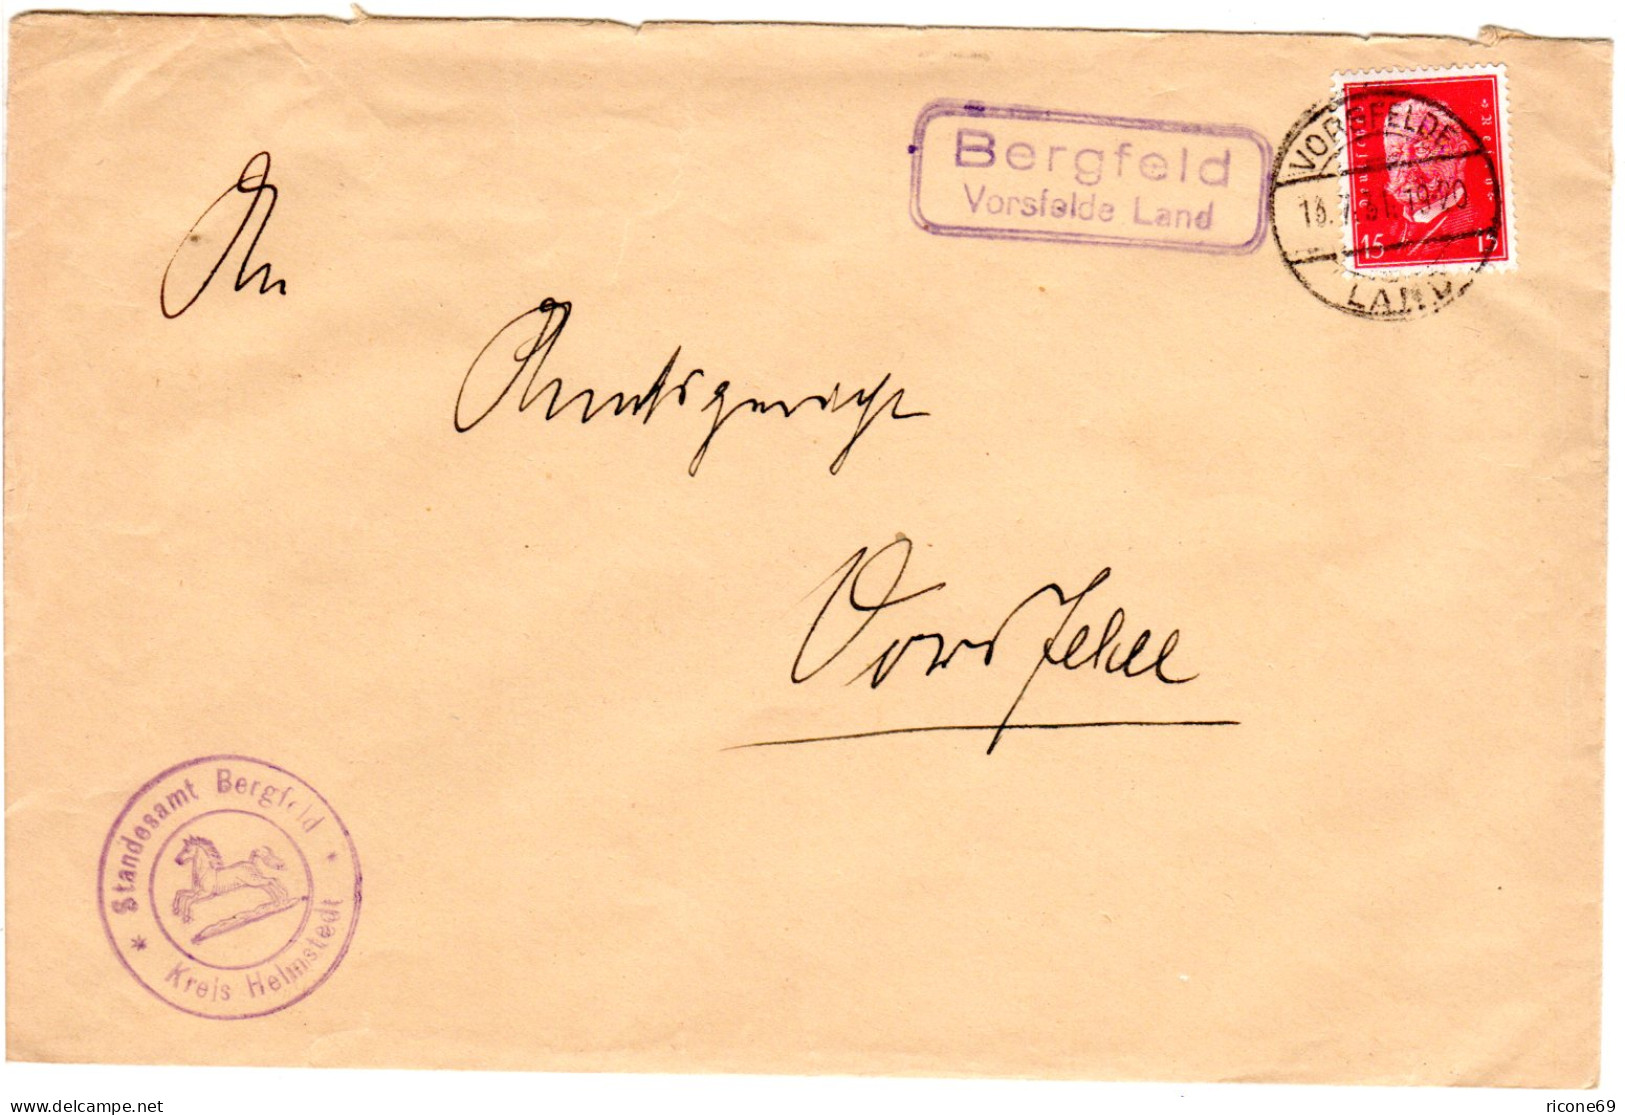 DR 1931, Landpoststpl. BERGFELD Vorsfelde Land Auf Brief M. 15 Pf. - Storia Postale